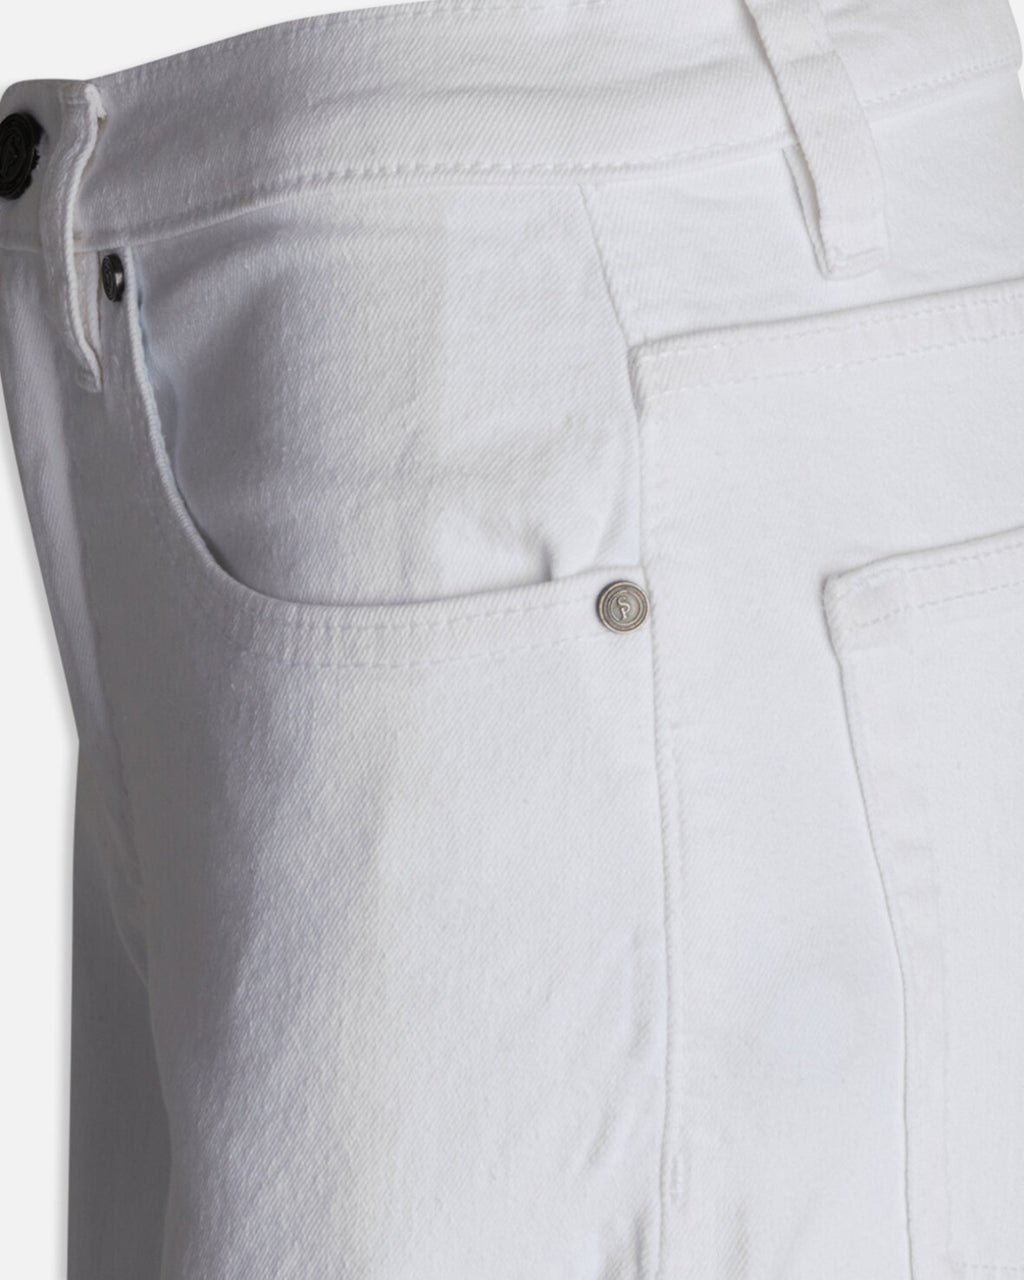 Owi Jeans - Hvid